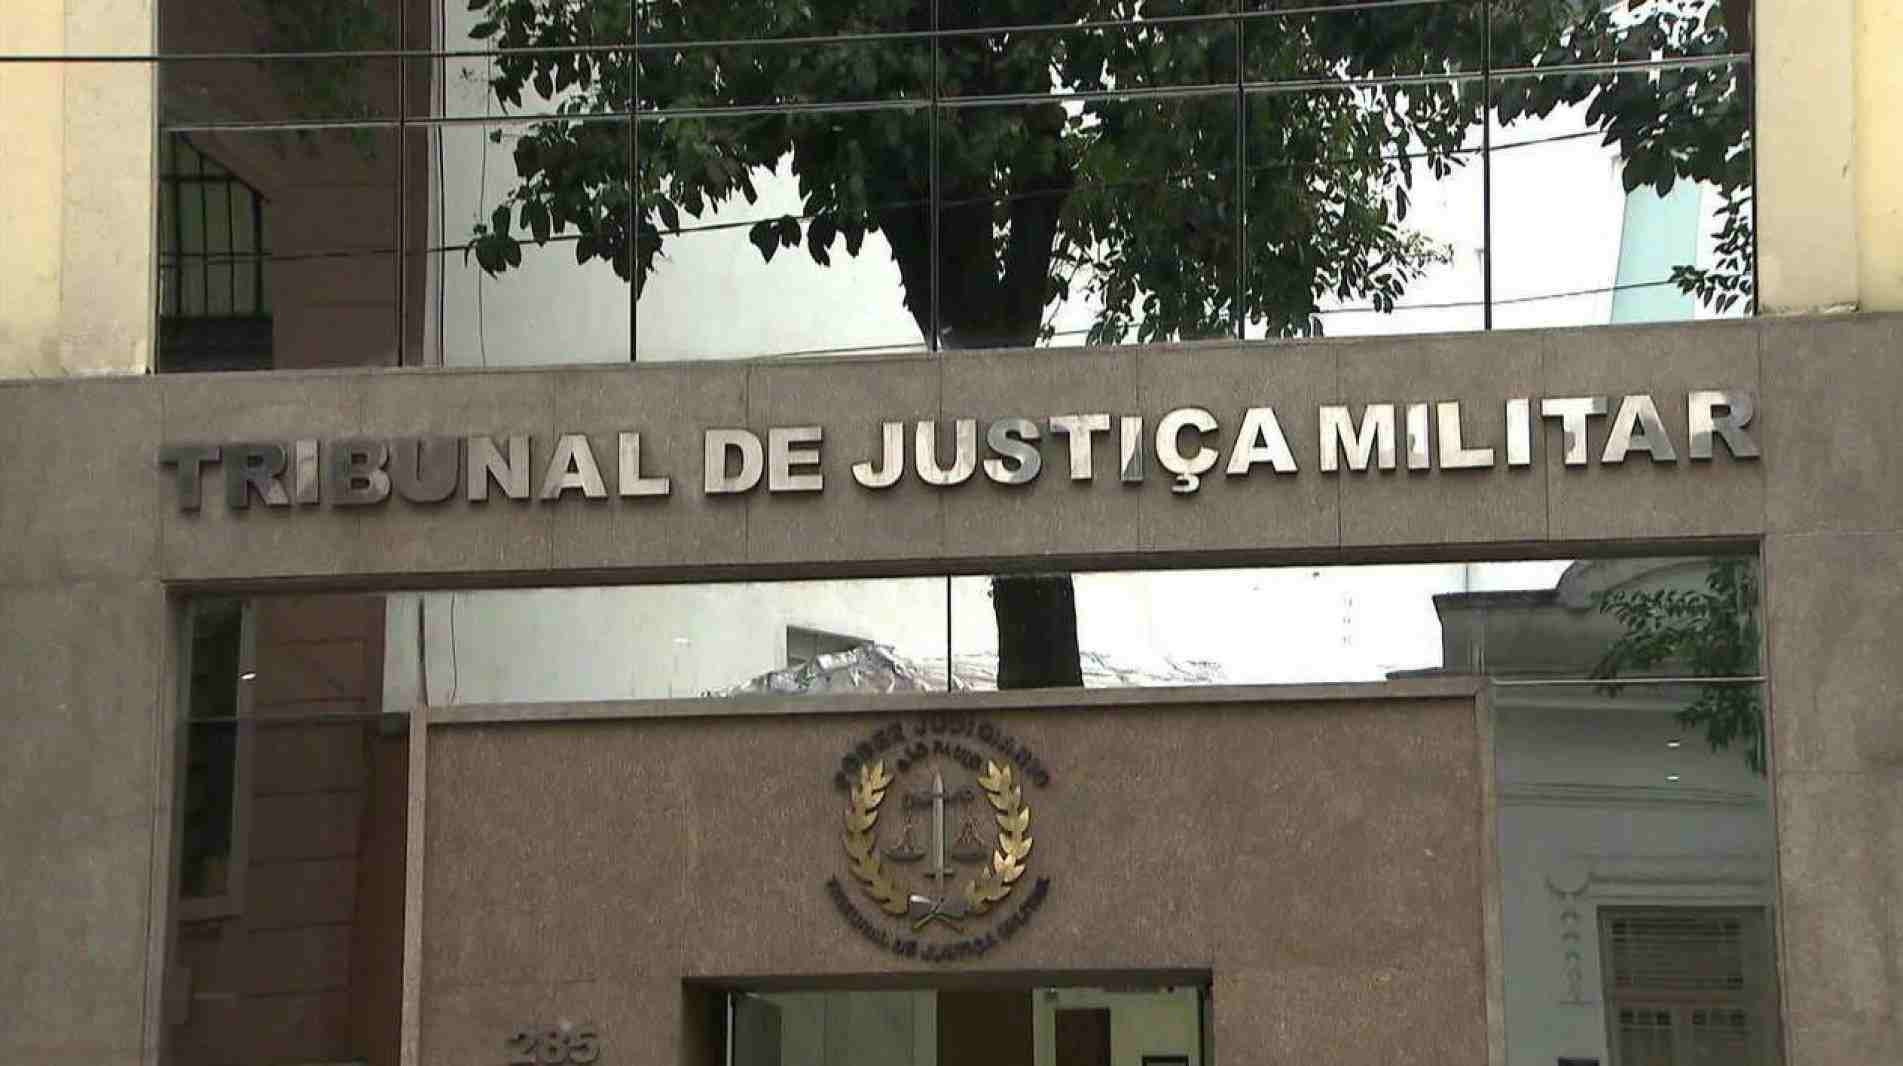 Fachada do Tribunal de Justiça Militar do Estado de São Paulo.